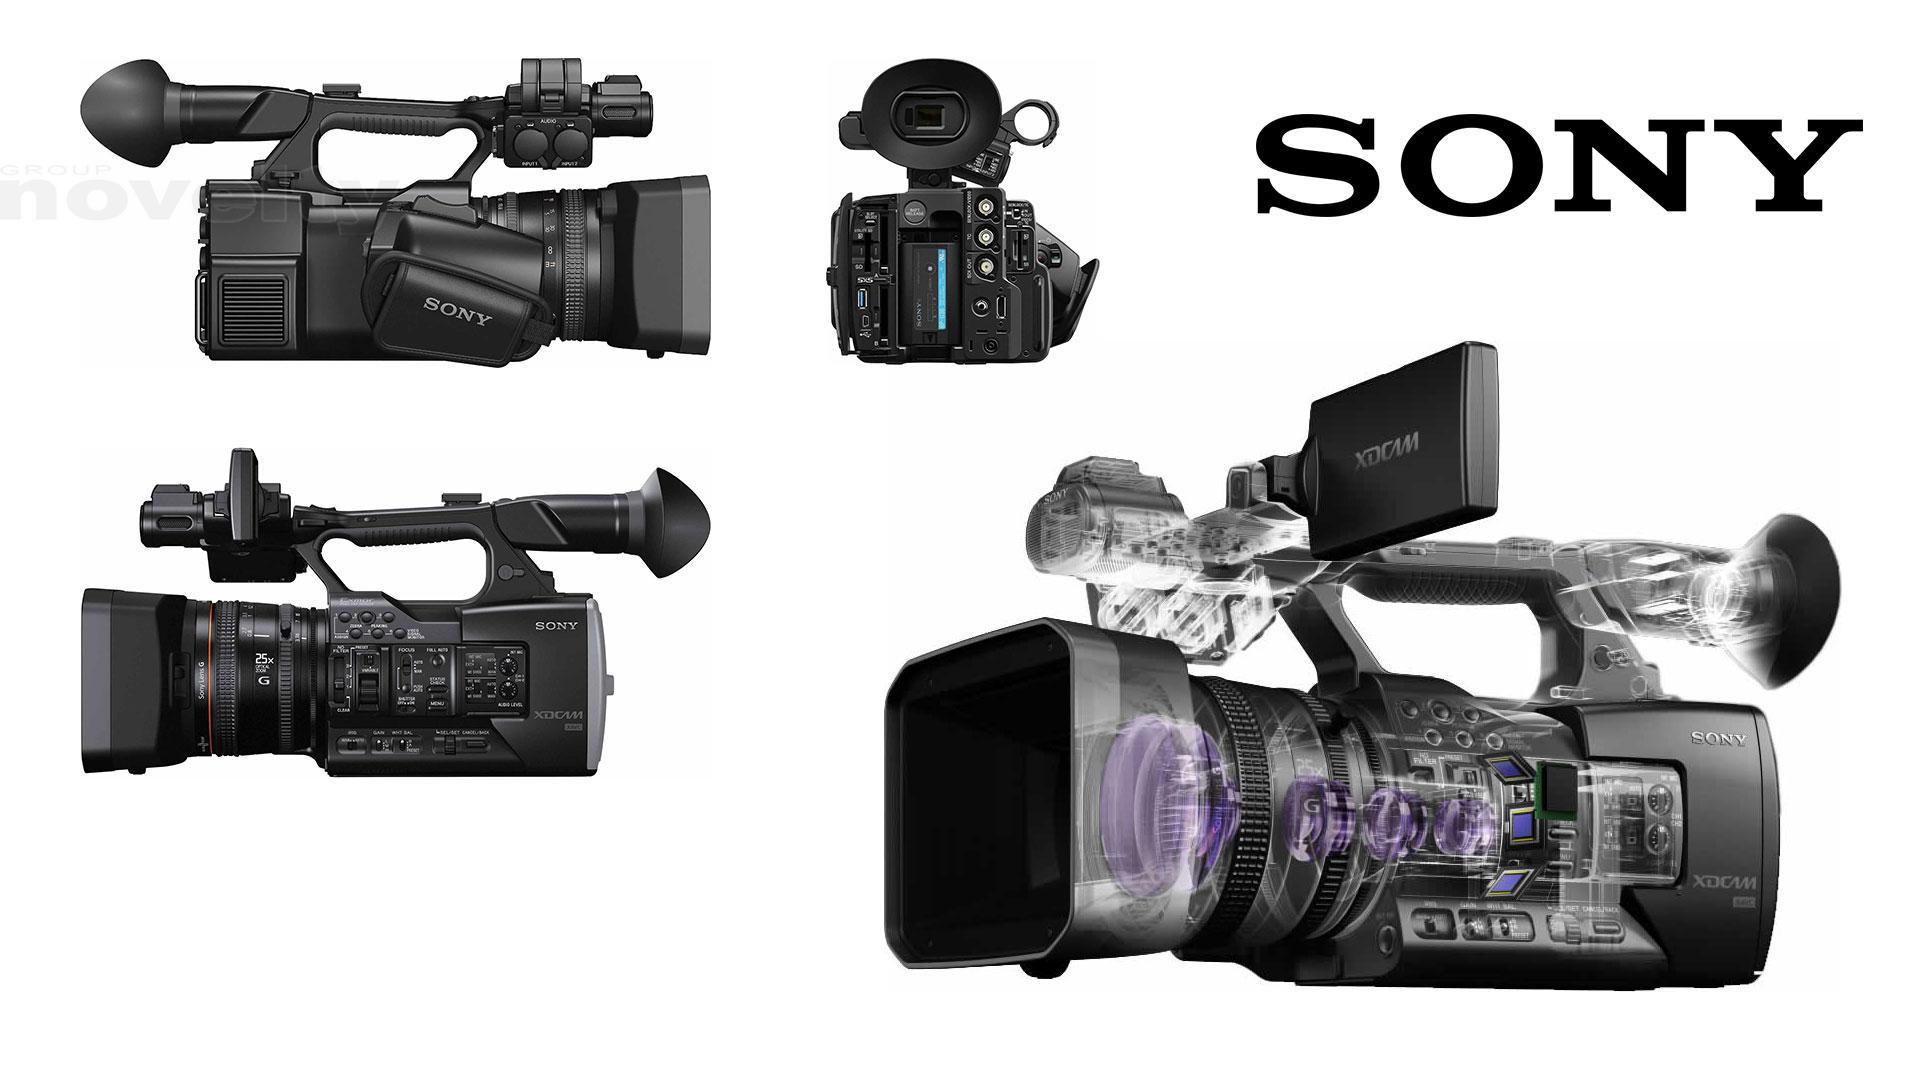 Visuel De nouveaux caméscopes Sony PXW-X160 @GroupeNovelty